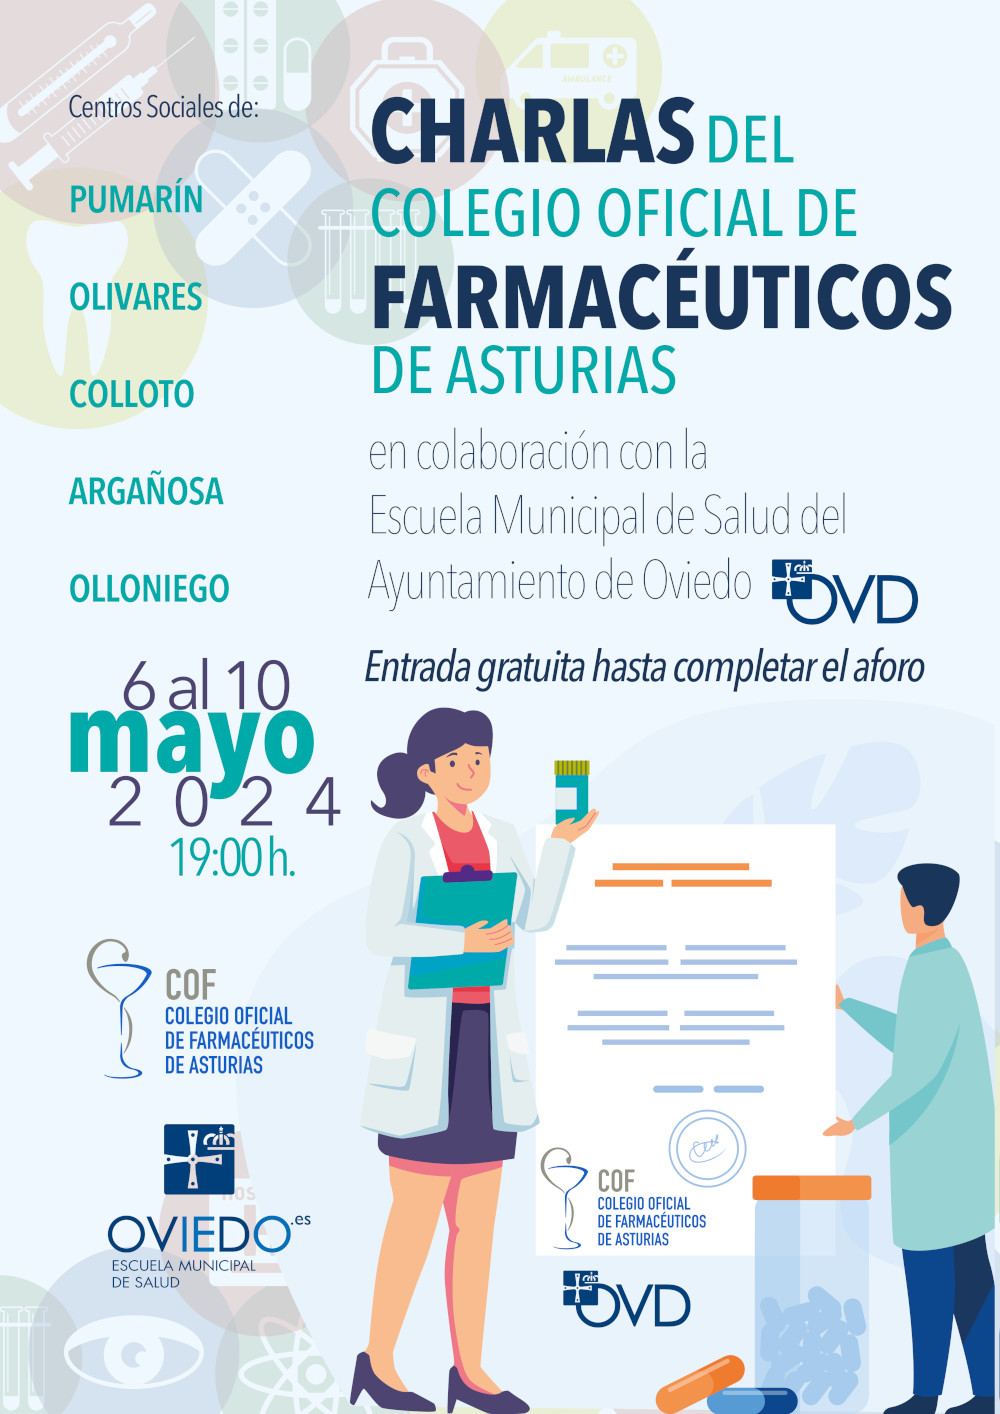 Escuela Municipal de Salud: "Botiquín familiar" (charla Colegio Oficial de Farmacéuticos de Asturias)